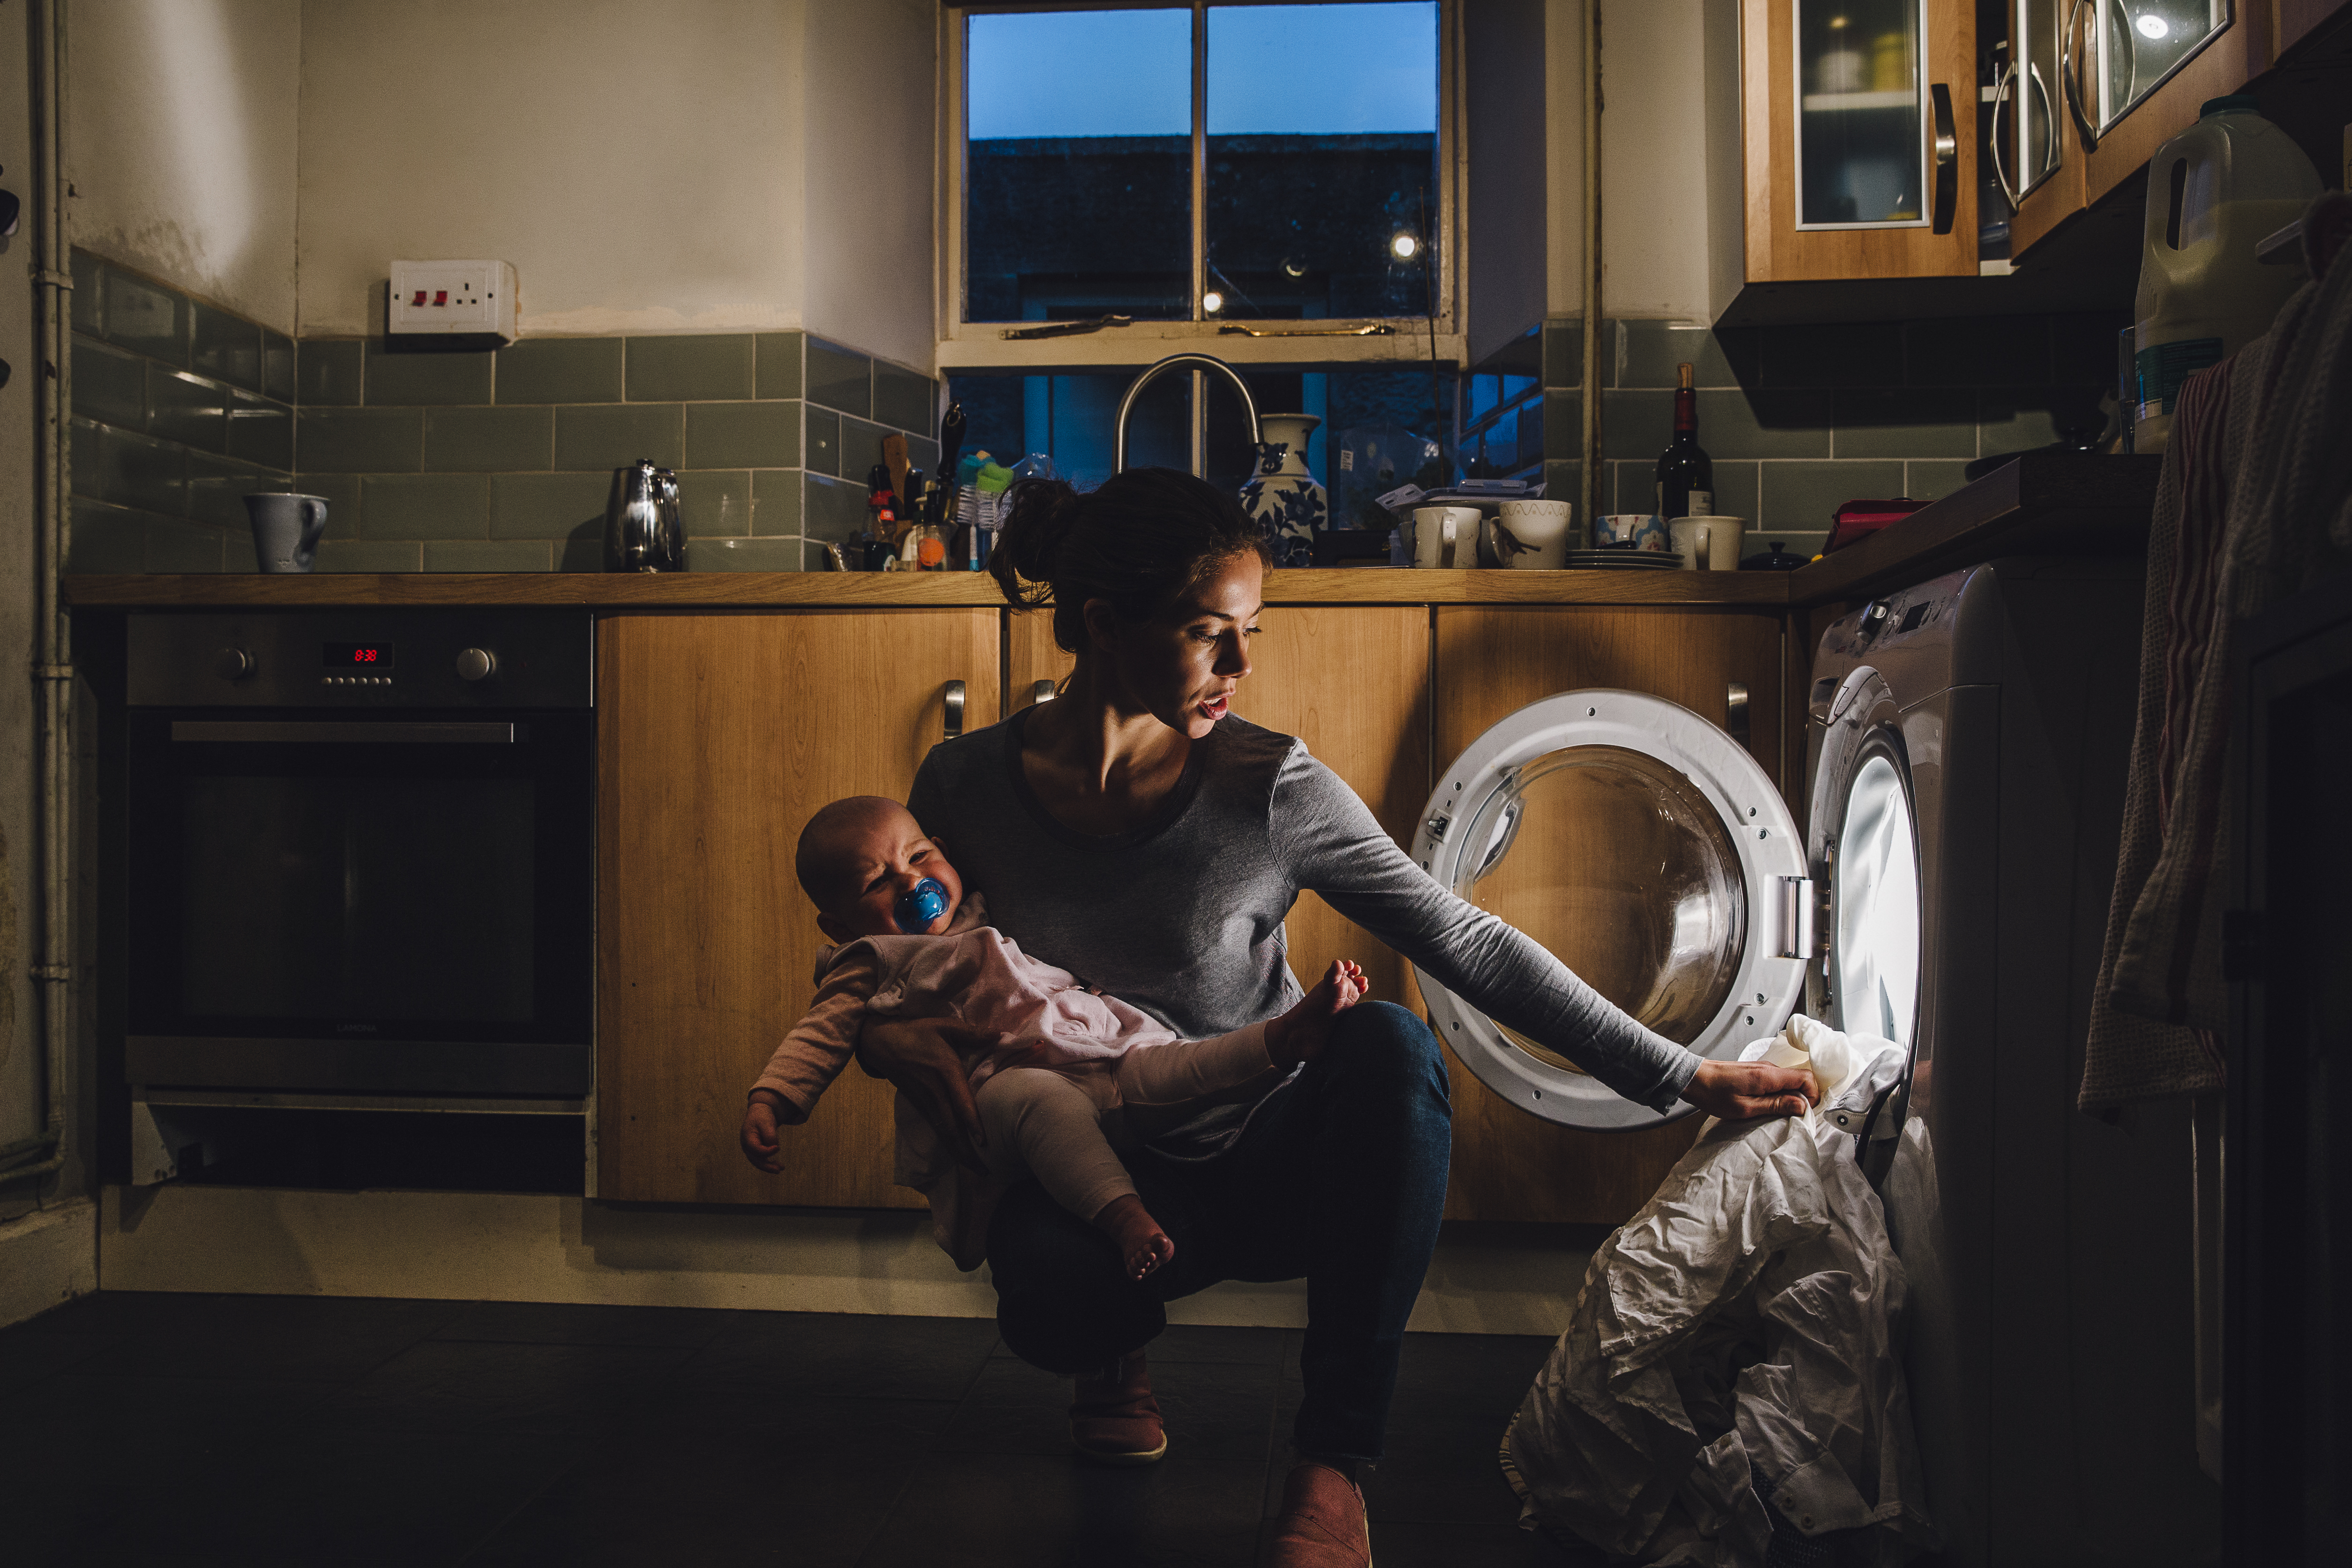 Saúde mental materna Cercada de estigmas, mãe que fica em casa sofre sozinha e pode até adoecer Bebe.br foto